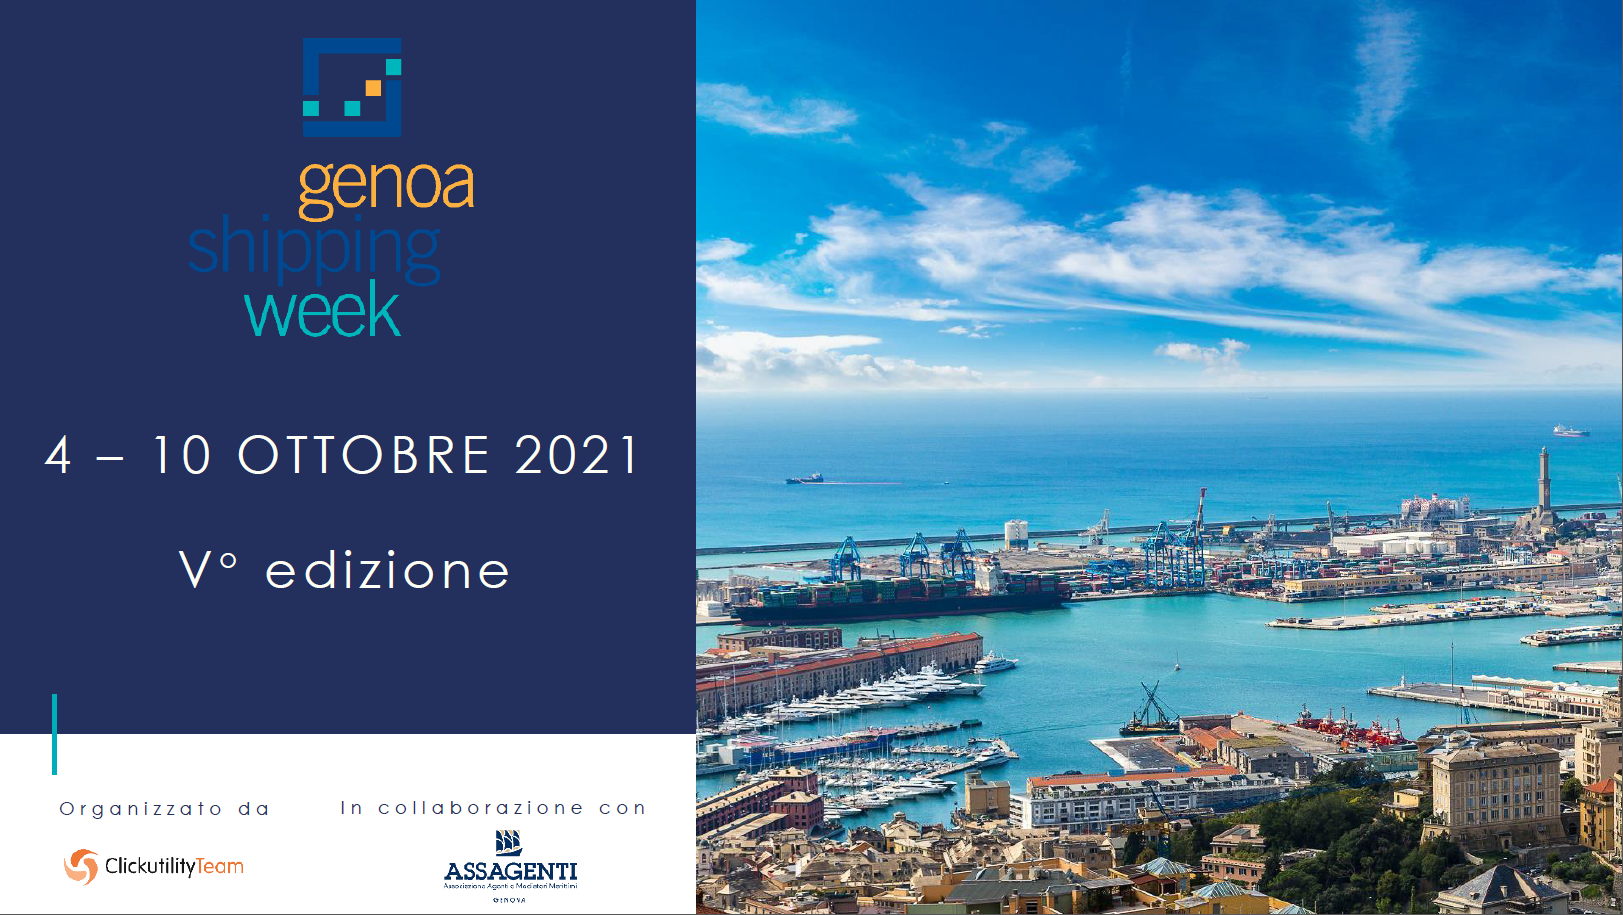 Genoa Shipping Week: dal 4 al 10 ottobre confermata la settimana internazionale dello shipping